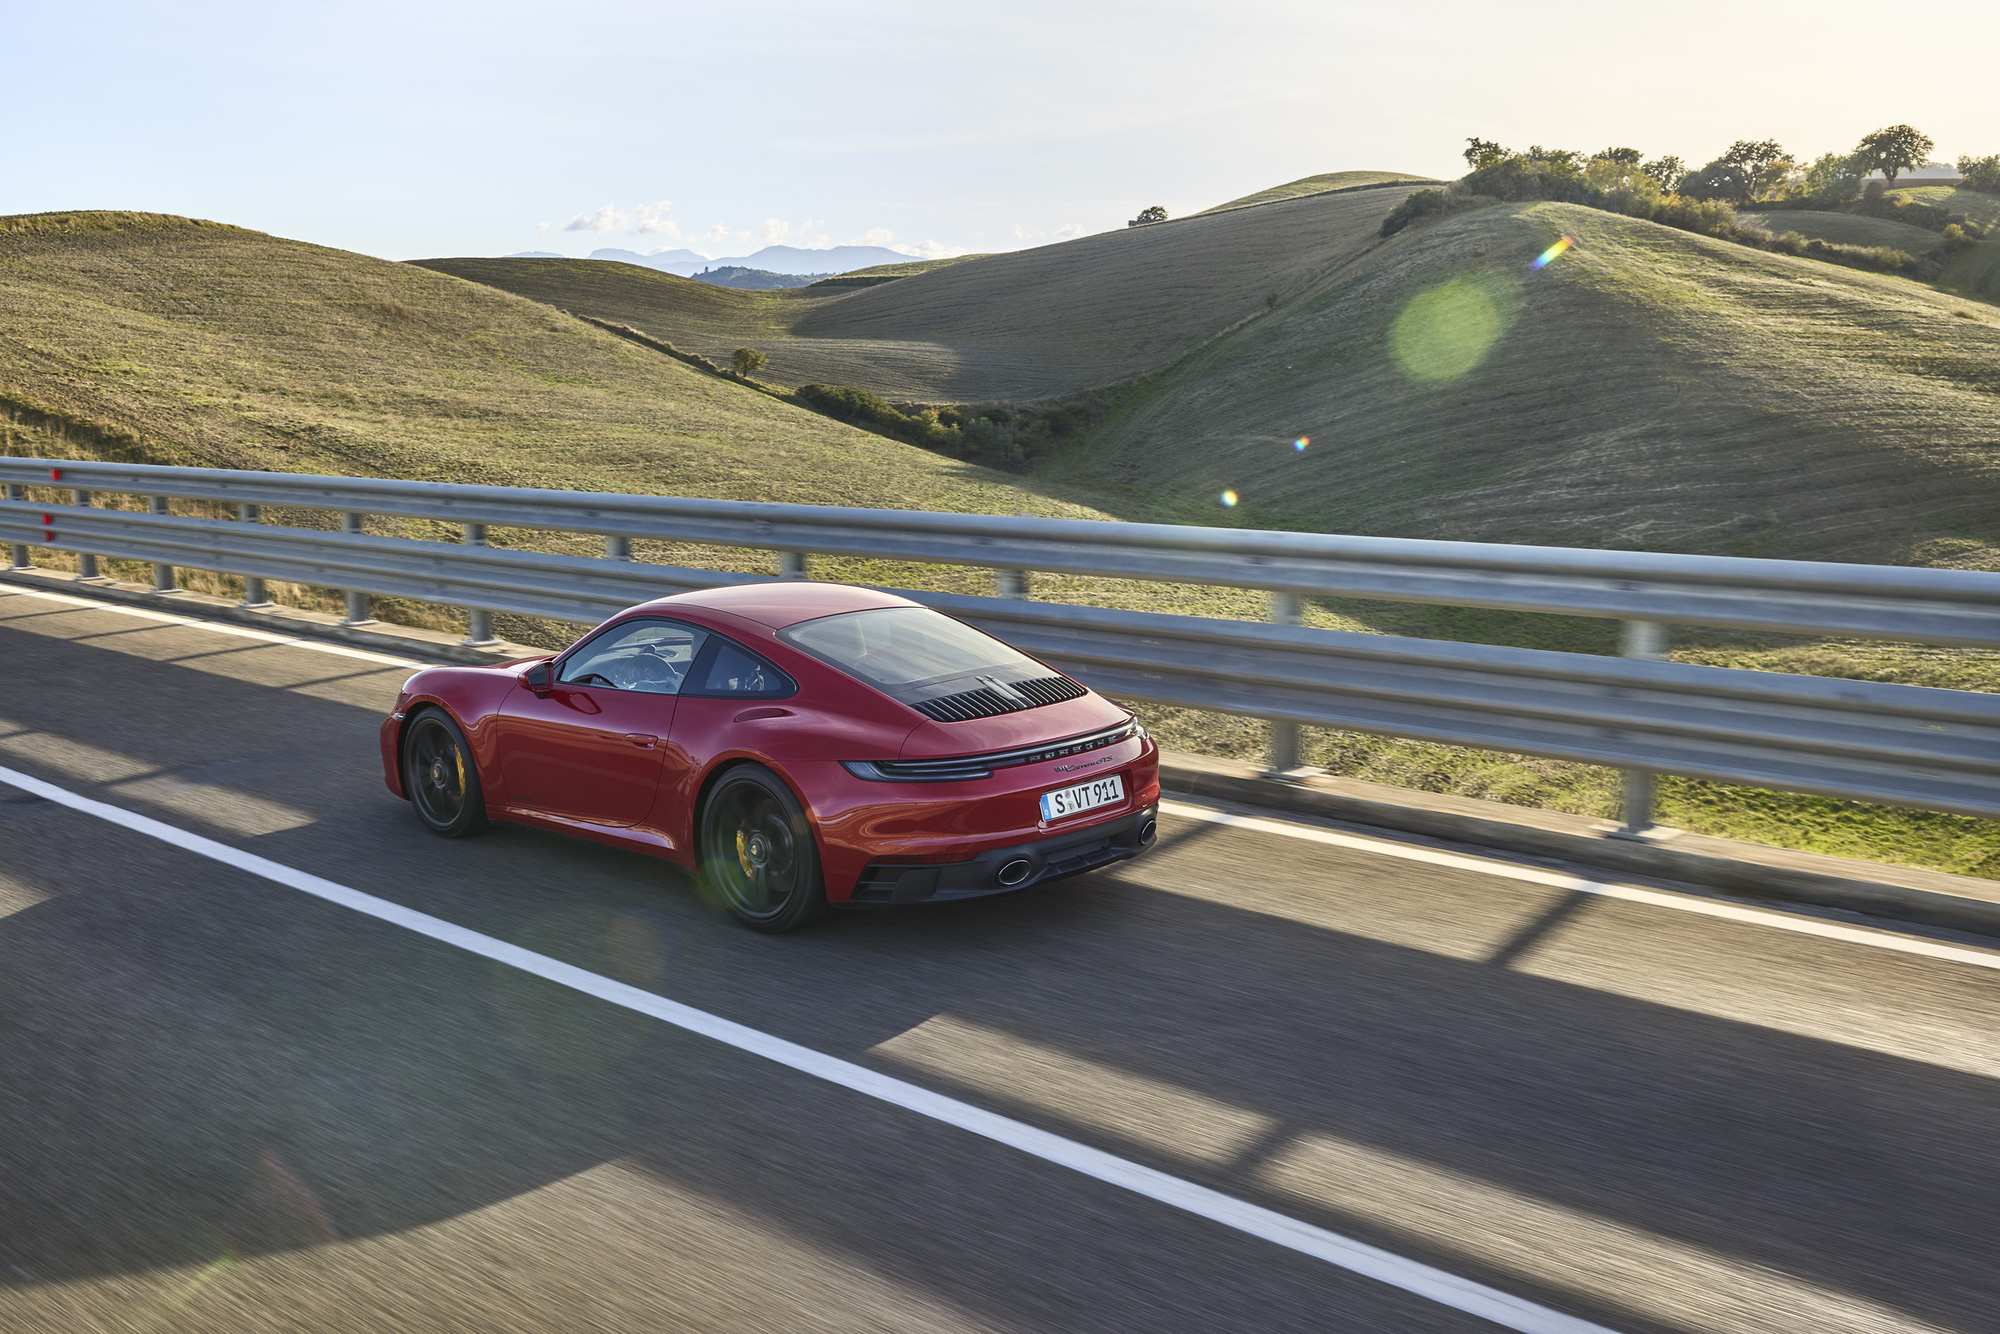 Ngựa Đức Porsche 911 GTS 2021 chào hàng giới nhà giàu Việt, giá từ 8,8 tỷ đồng - Ảnh 4.